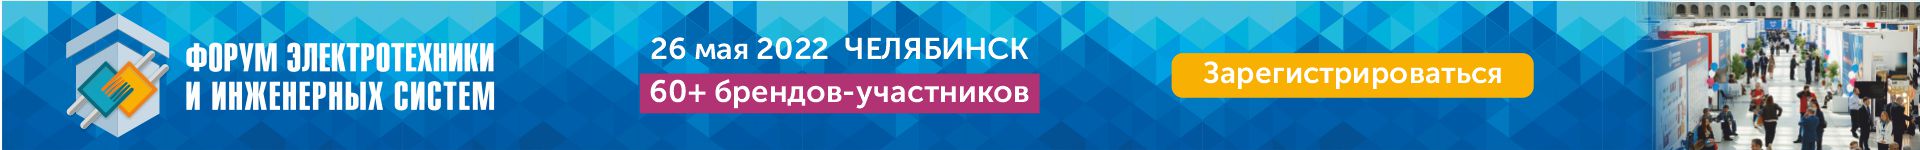 Форум электротехники и инженерных систем в Челябинске 